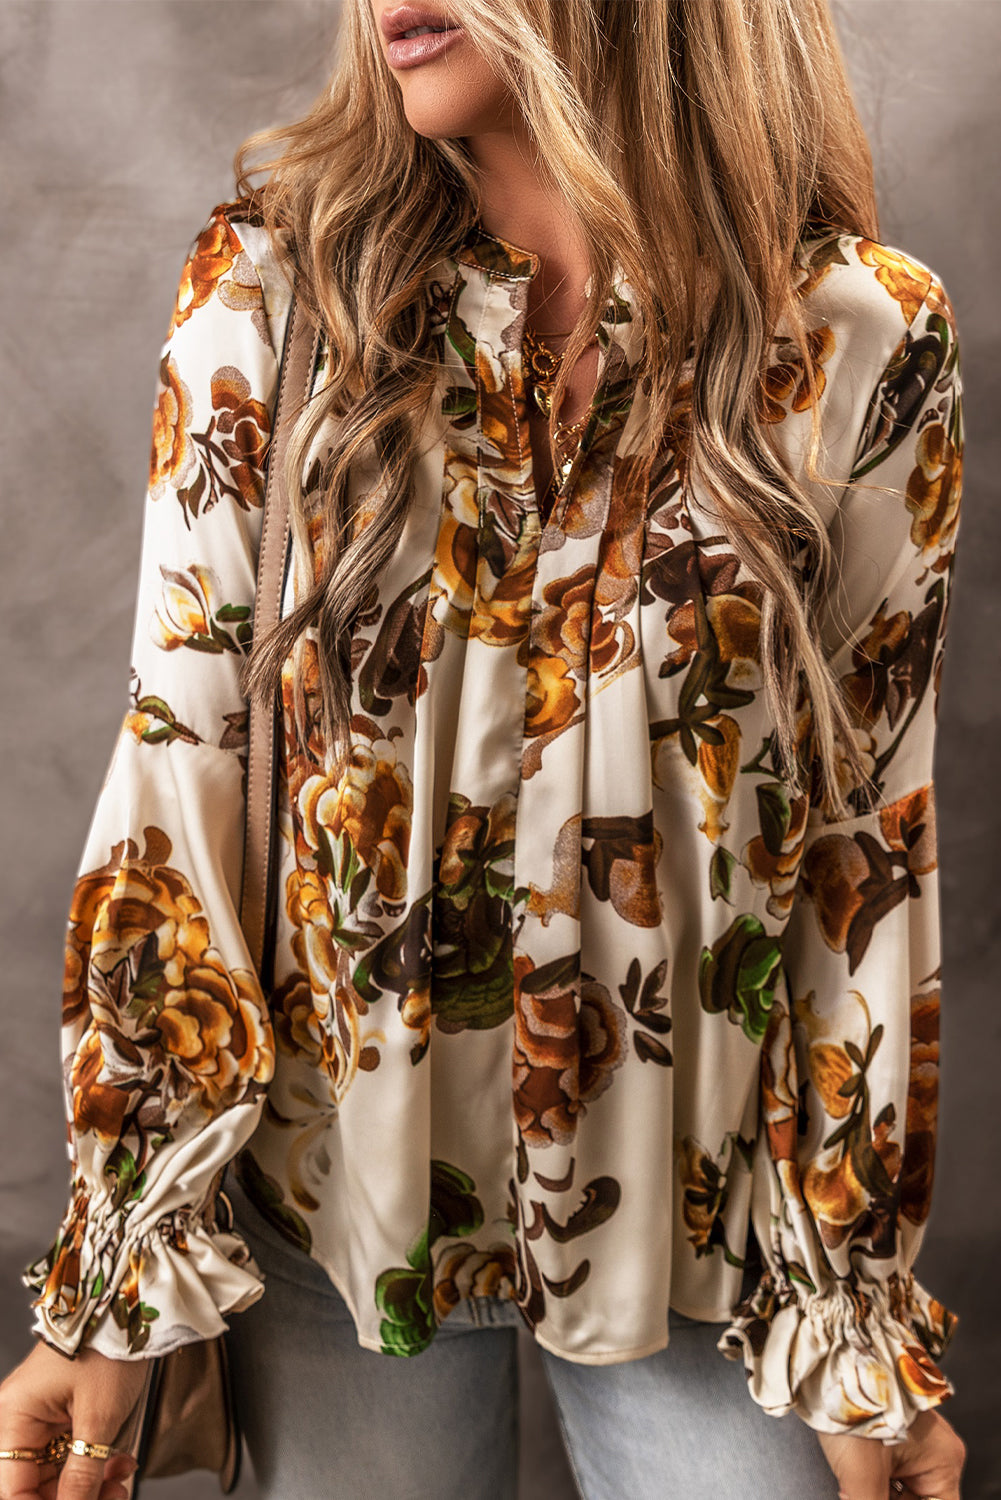 Splendida camicetta floreale con maniche a balza e collo diviso color albicocca